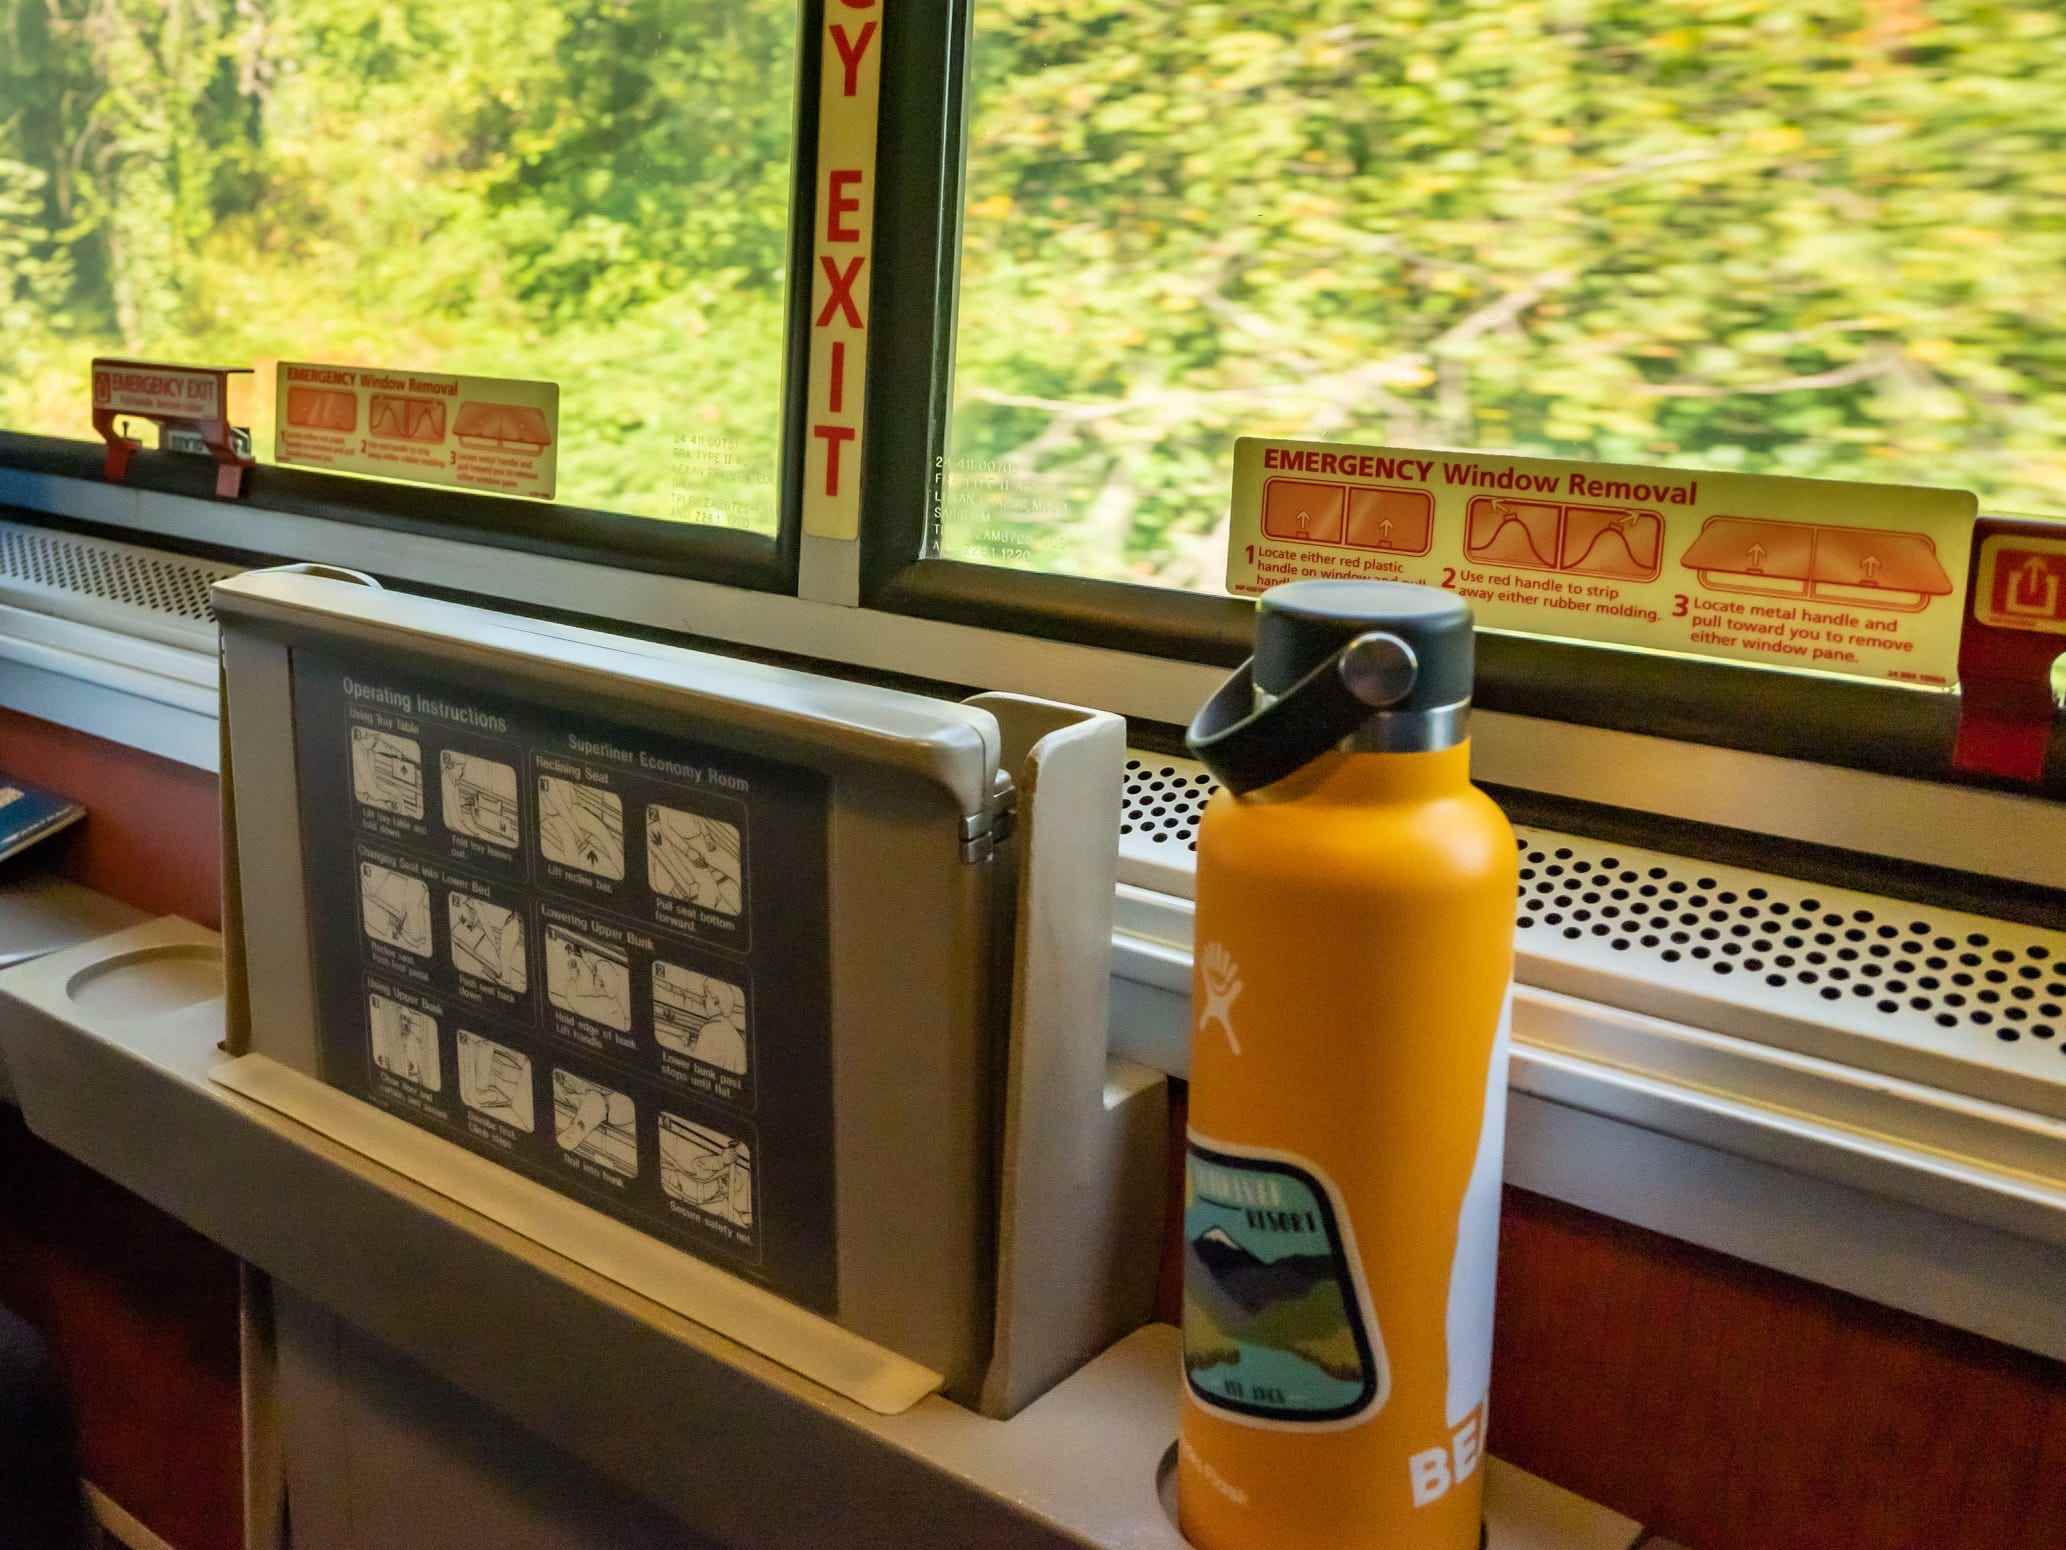 Blick auf Bäume außerhalb des Fensters mit orangefarbener Wasserflasche auf dem Sims am Fenster im Amtrak-Schlafwagen